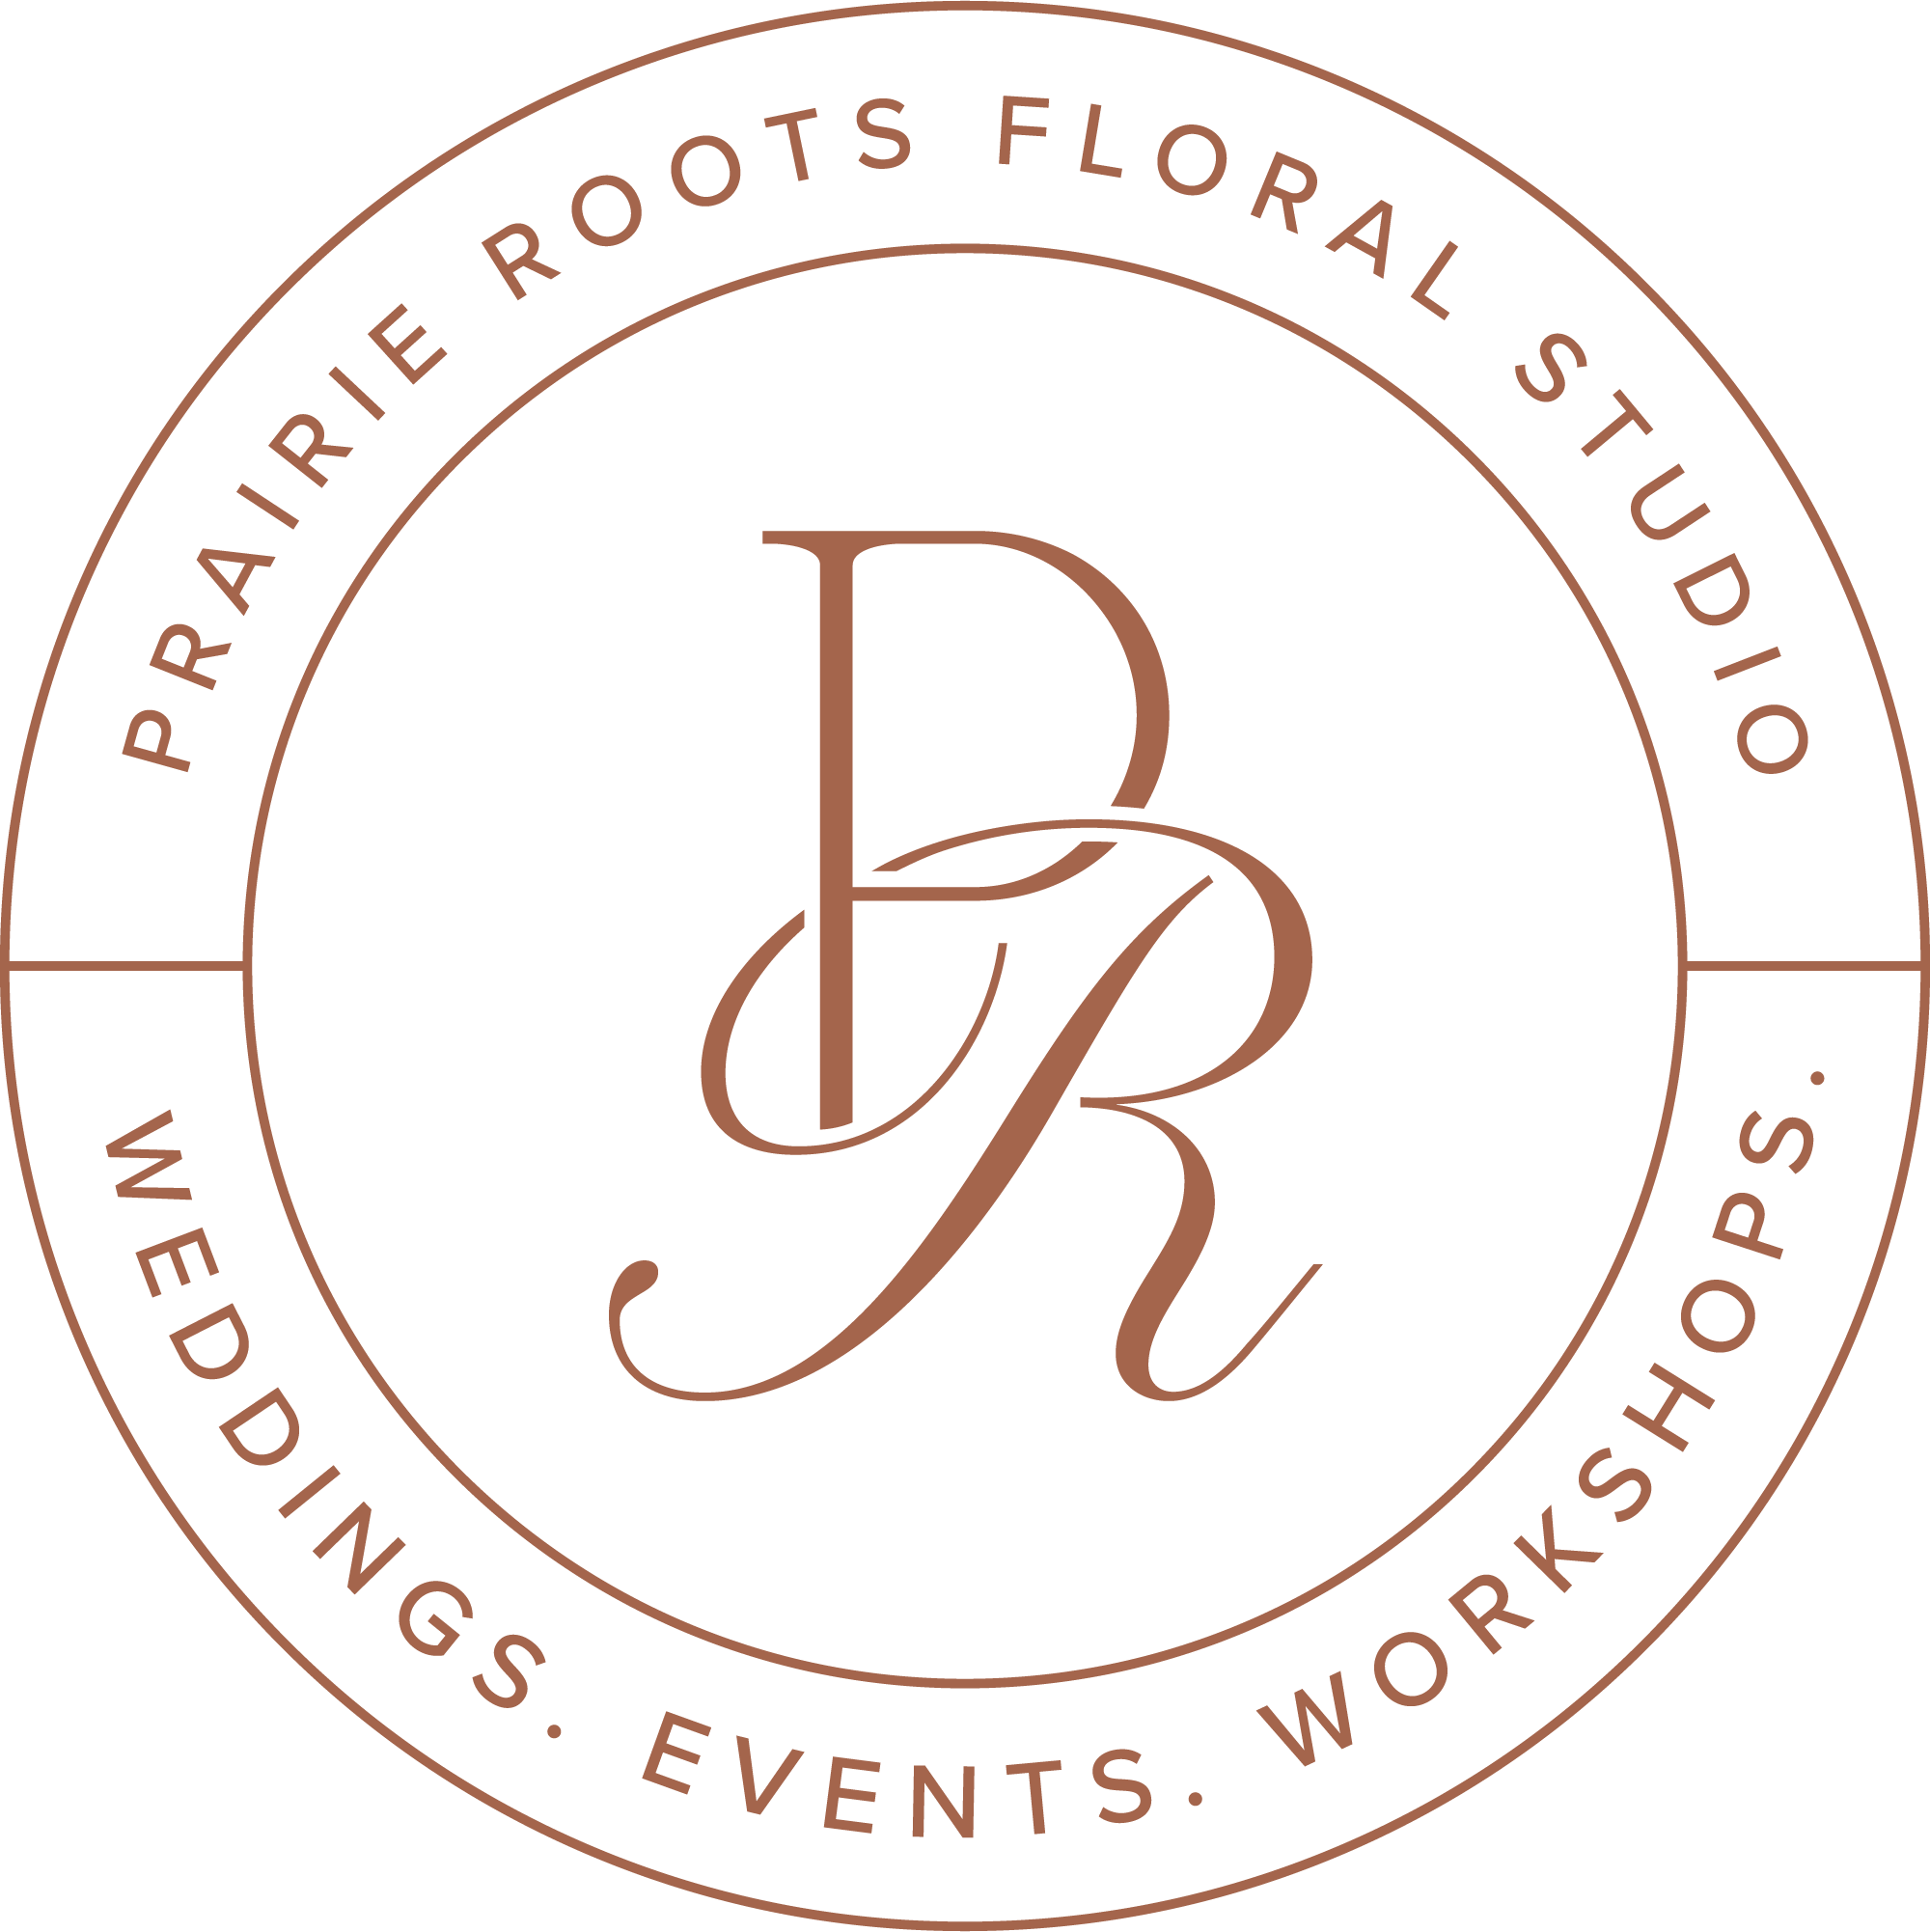 Prairie Roots Floral Studio